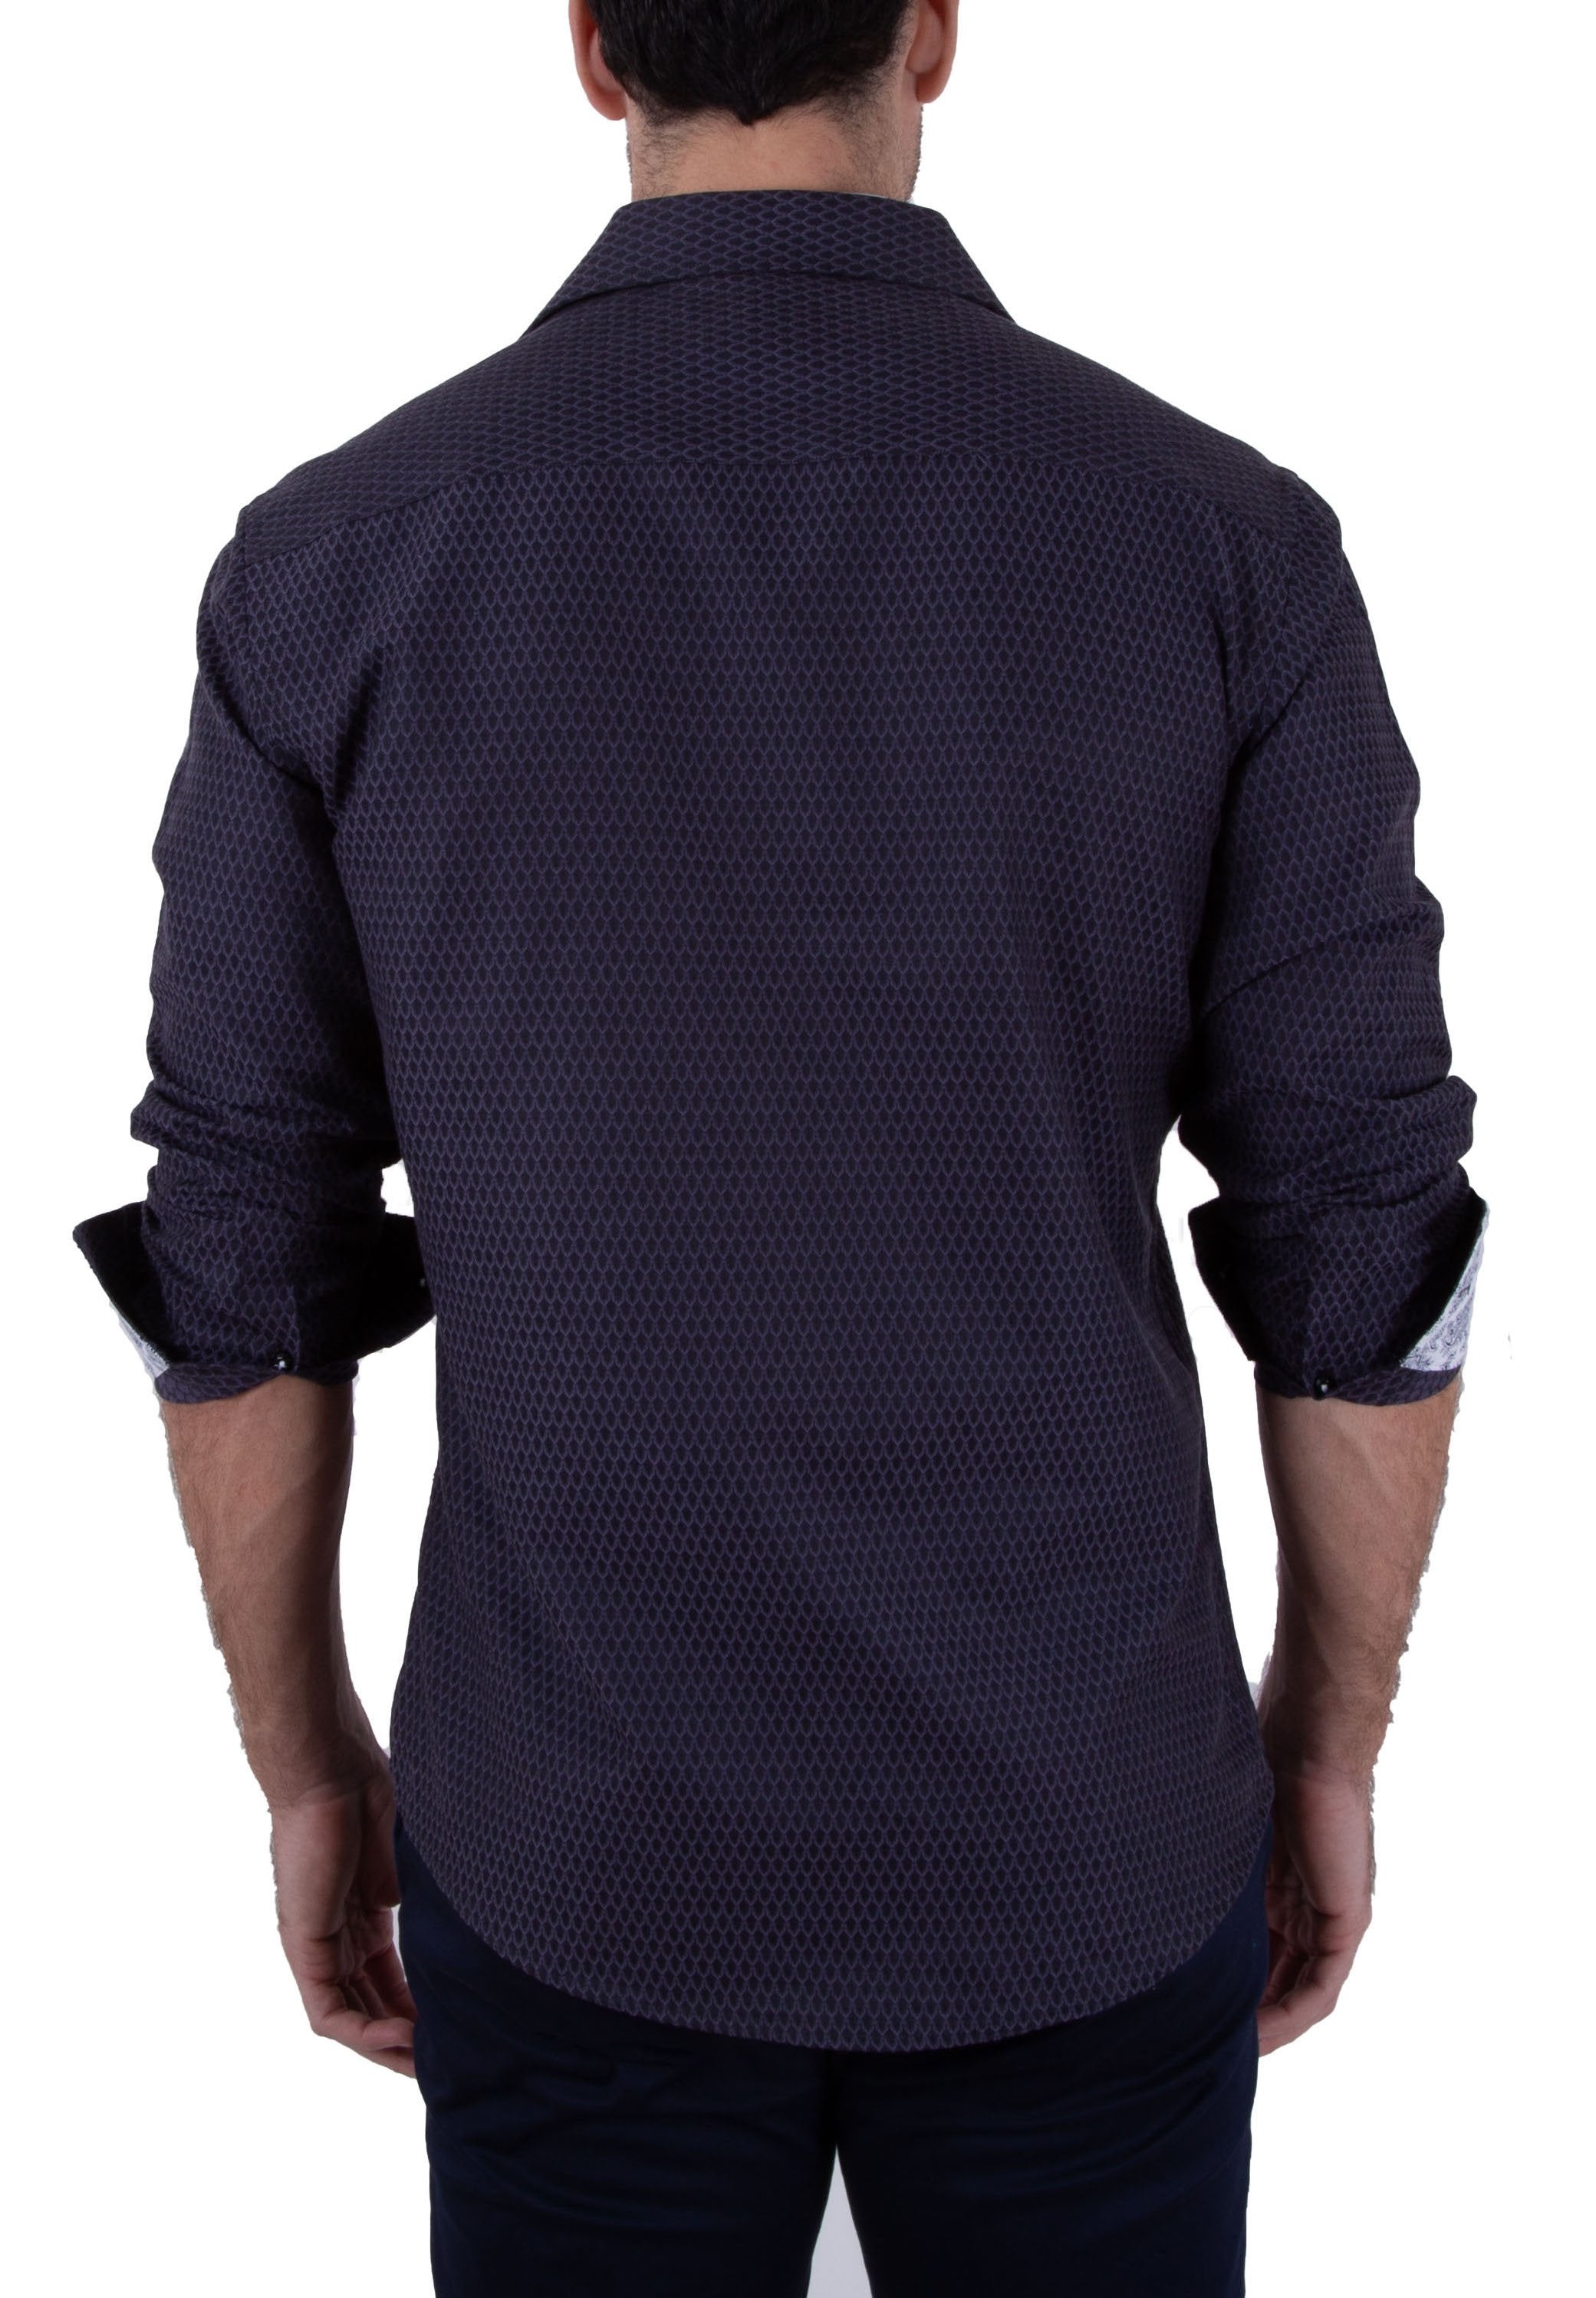 BESPOKE - Mens Black Button Up Long Sleeve Dress Shirt - Modern Fit ...